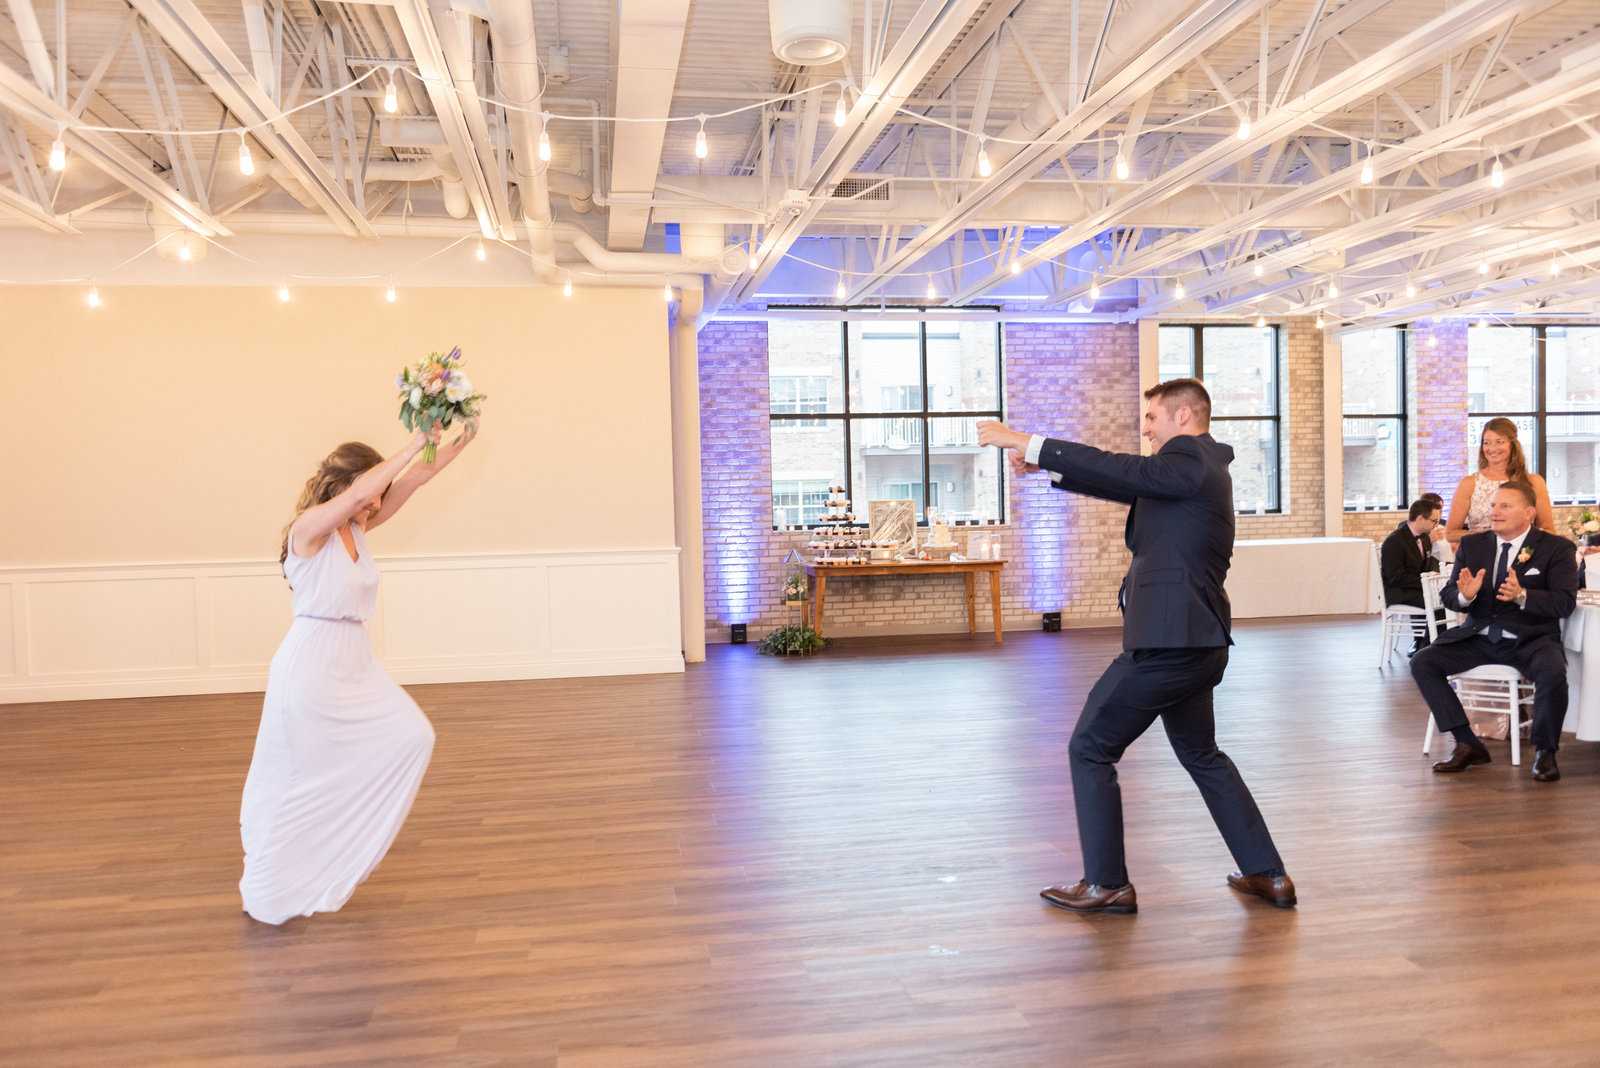 Bride and groom dancing on a wooden dance floor